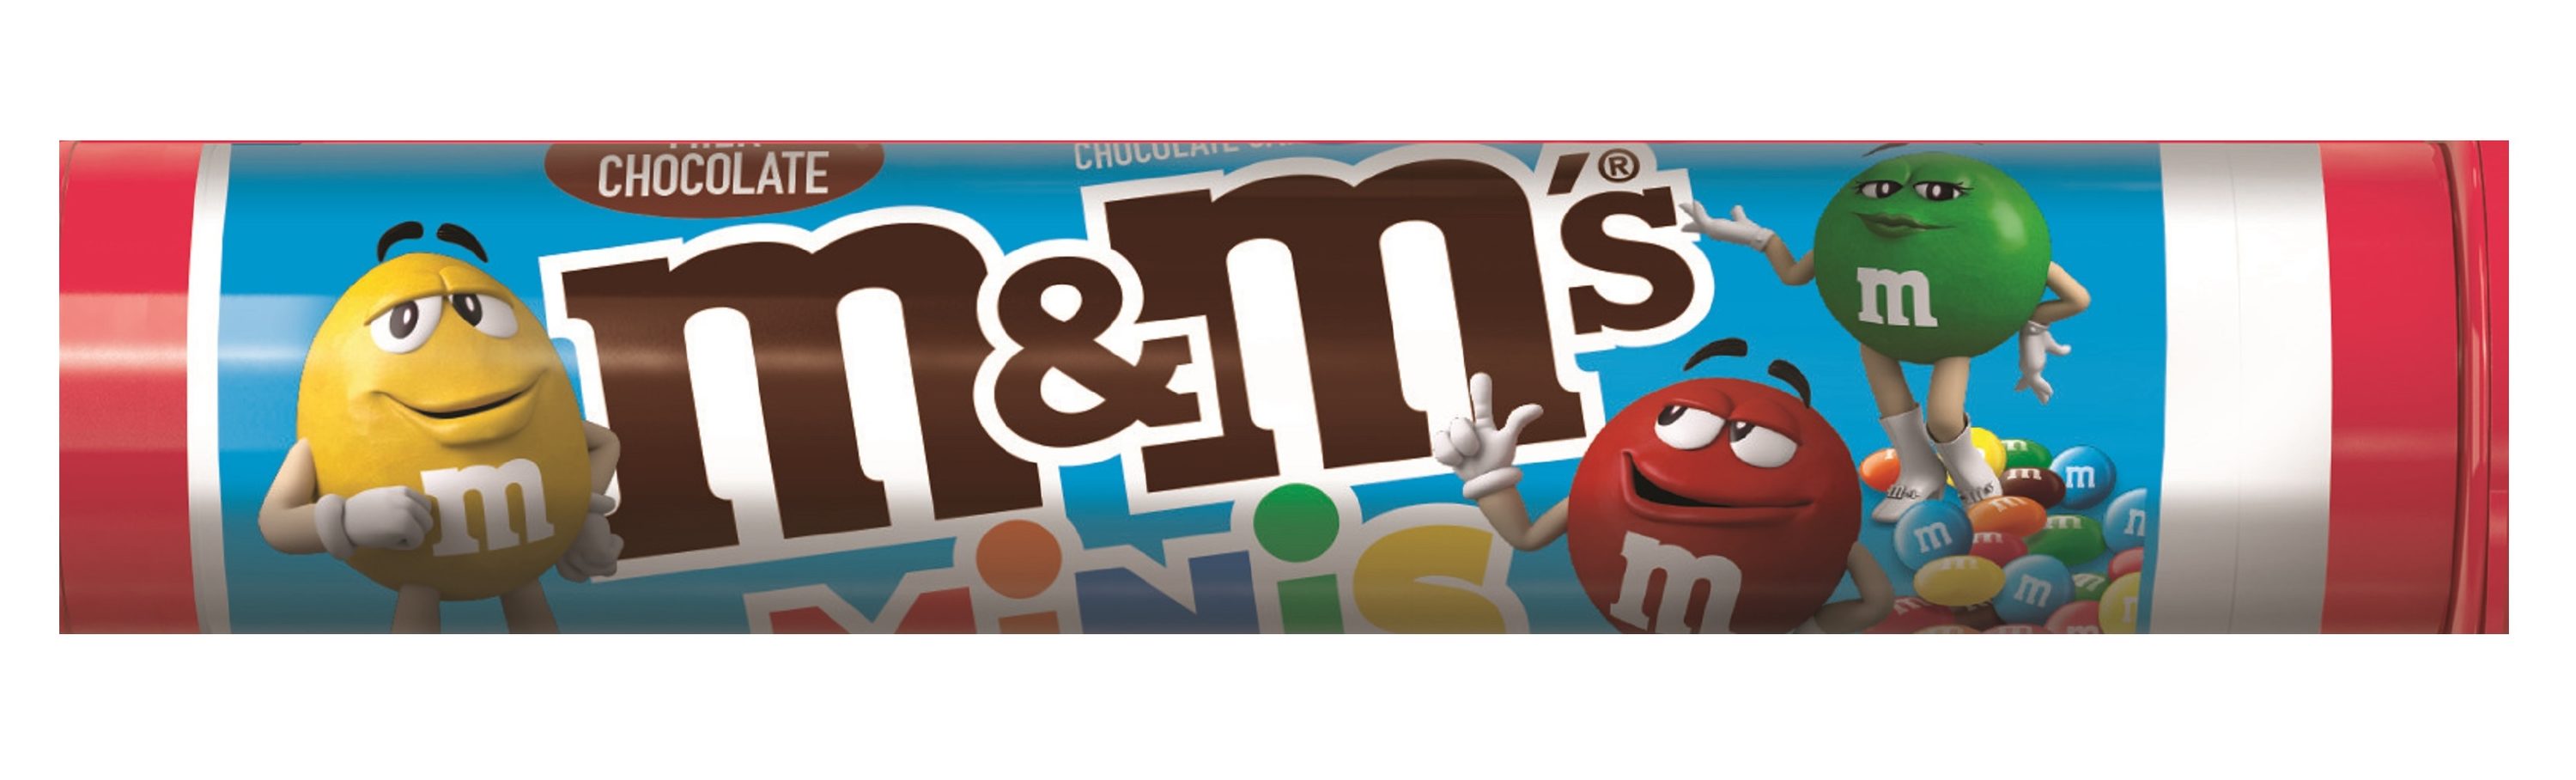 M&M's Minis Milk Chocolate Candies - 1.77 oz pkg